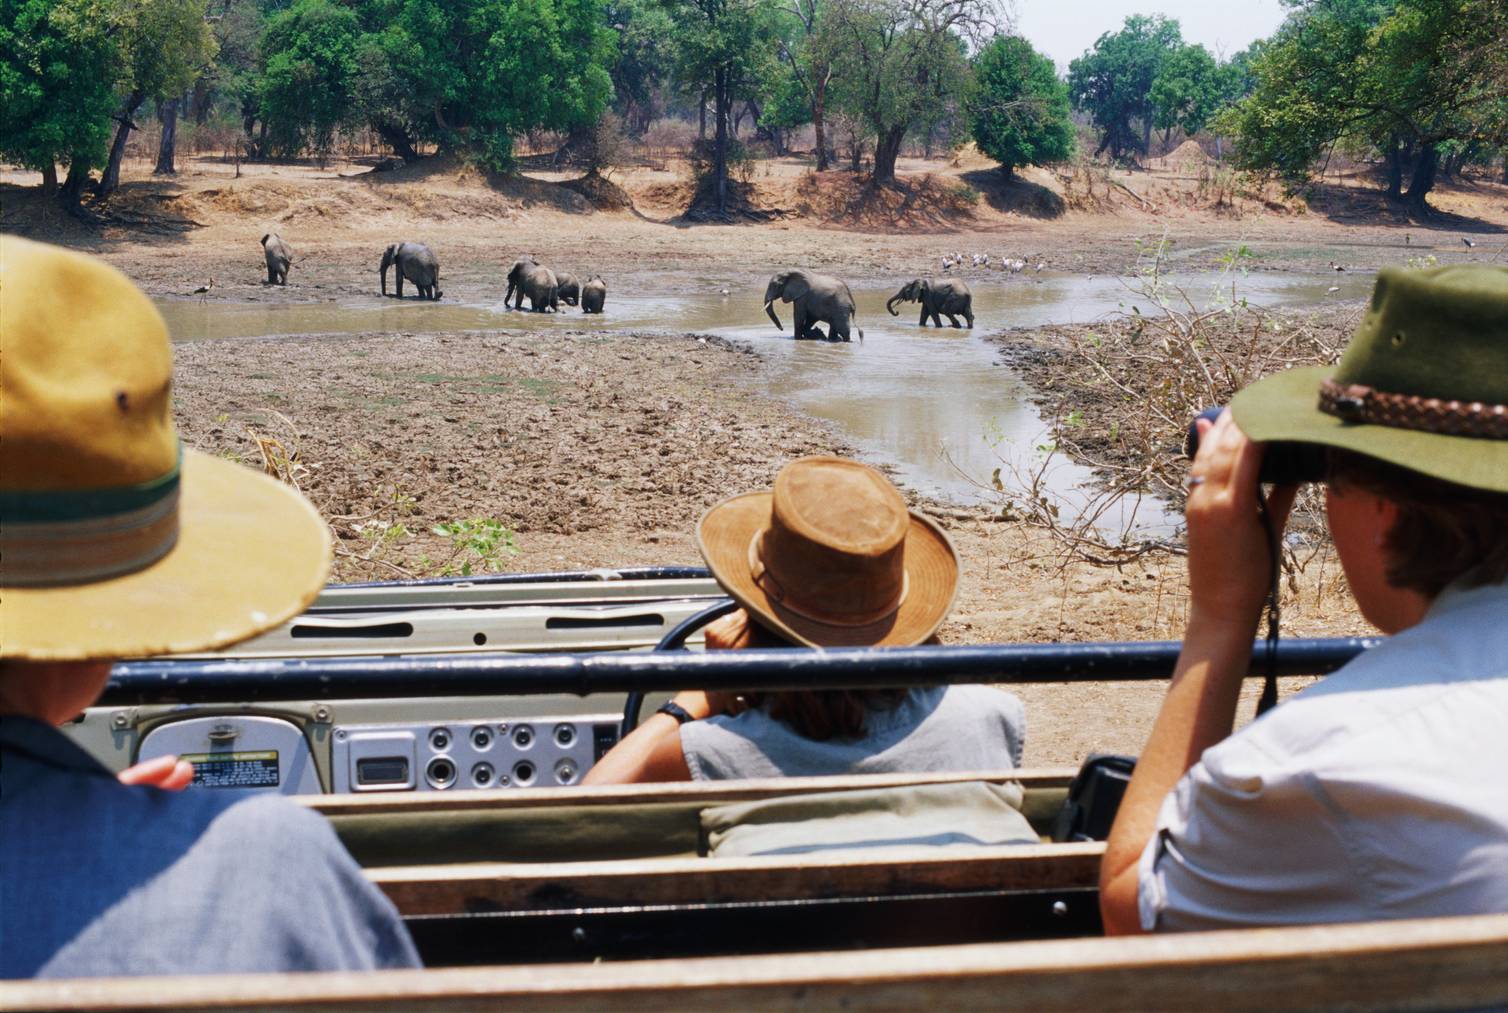 Wer auf Safari gehen möchte, sollte Sambia als Reiseziel berücksichtigen.